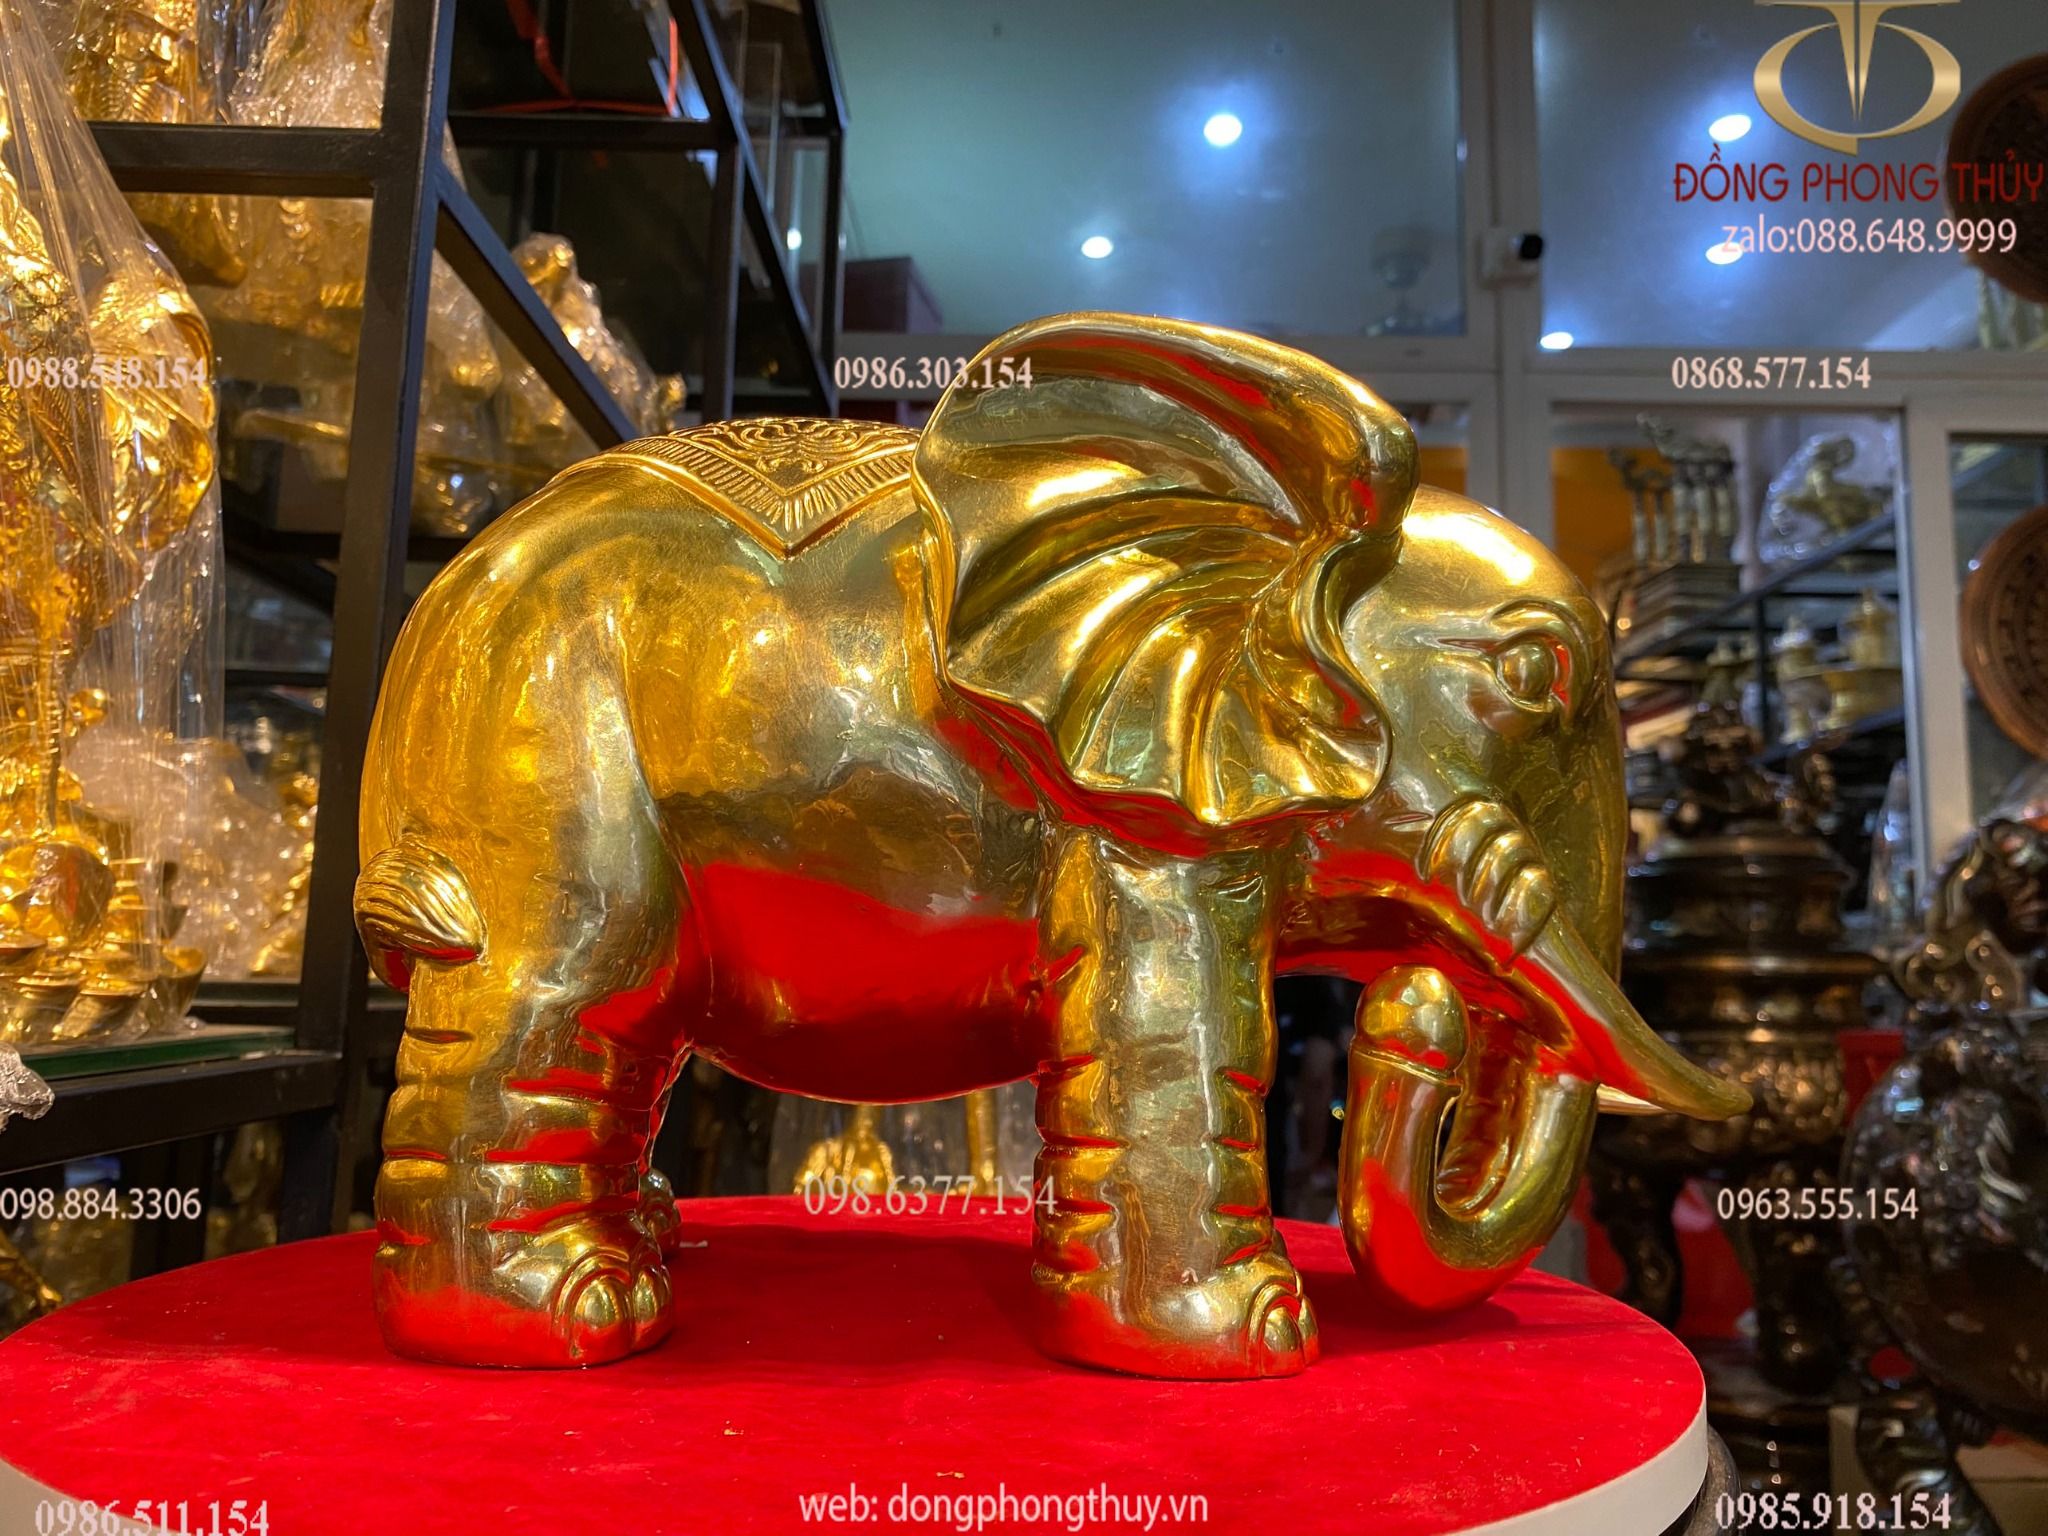 Đôi voi bằng đồng dát vàng 24k cao 26 dài 31 ngang 17 nặng 5,2+4,7kg